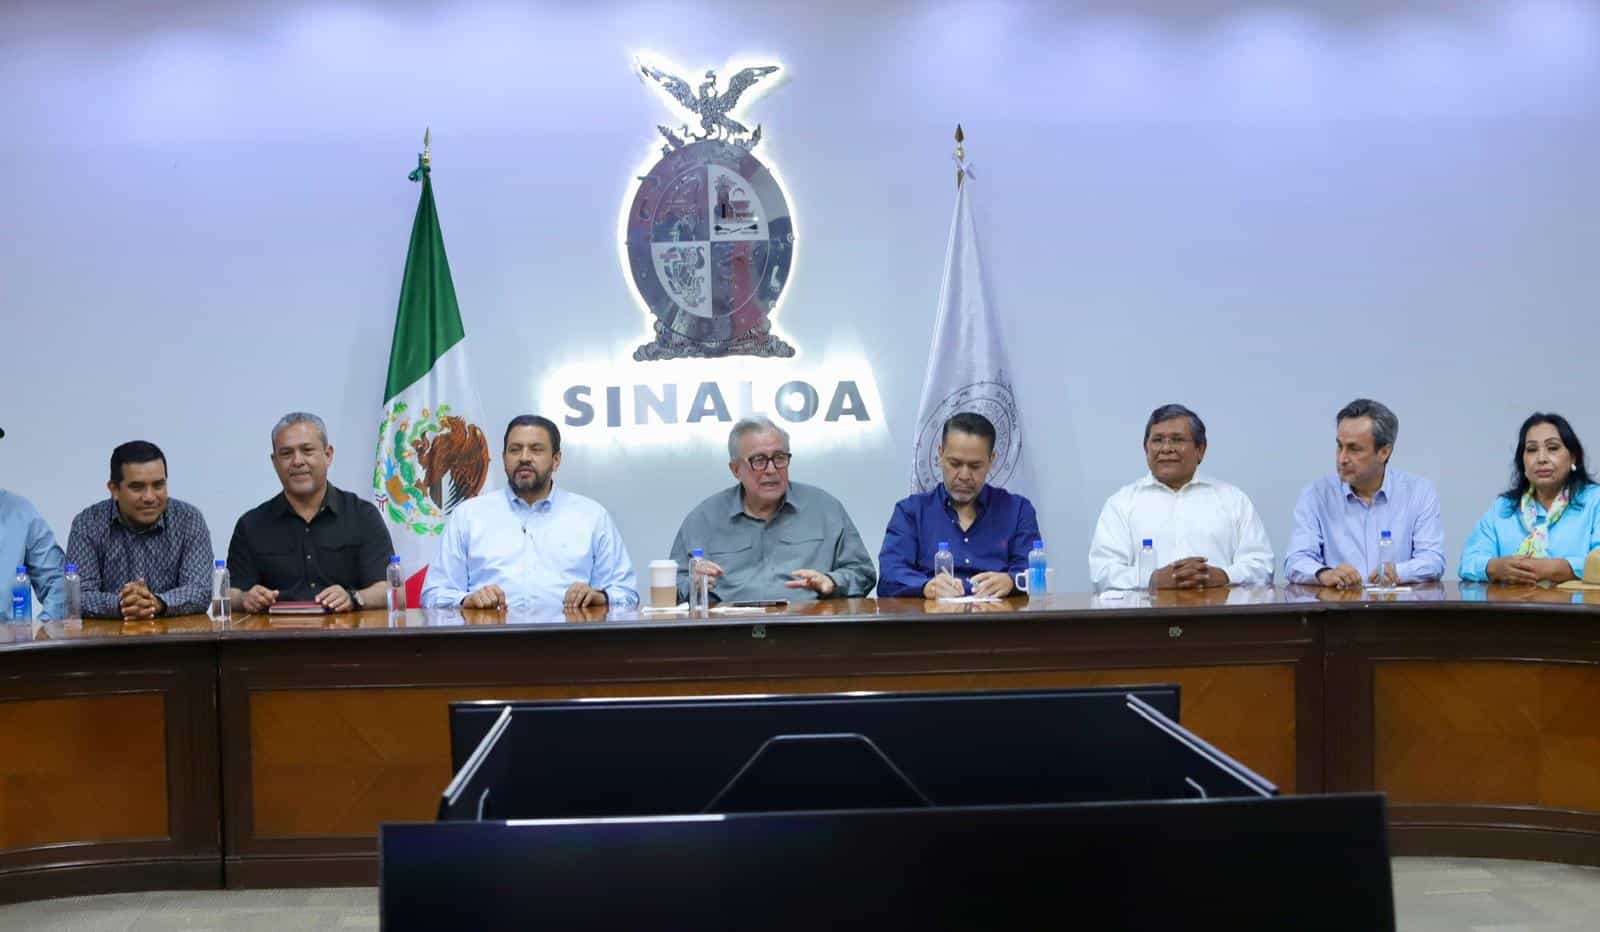 El gobernador Rubén Rocha Moya refrendó su pleno compromiso de apoyar a los productores de maíz de Sinaloa.